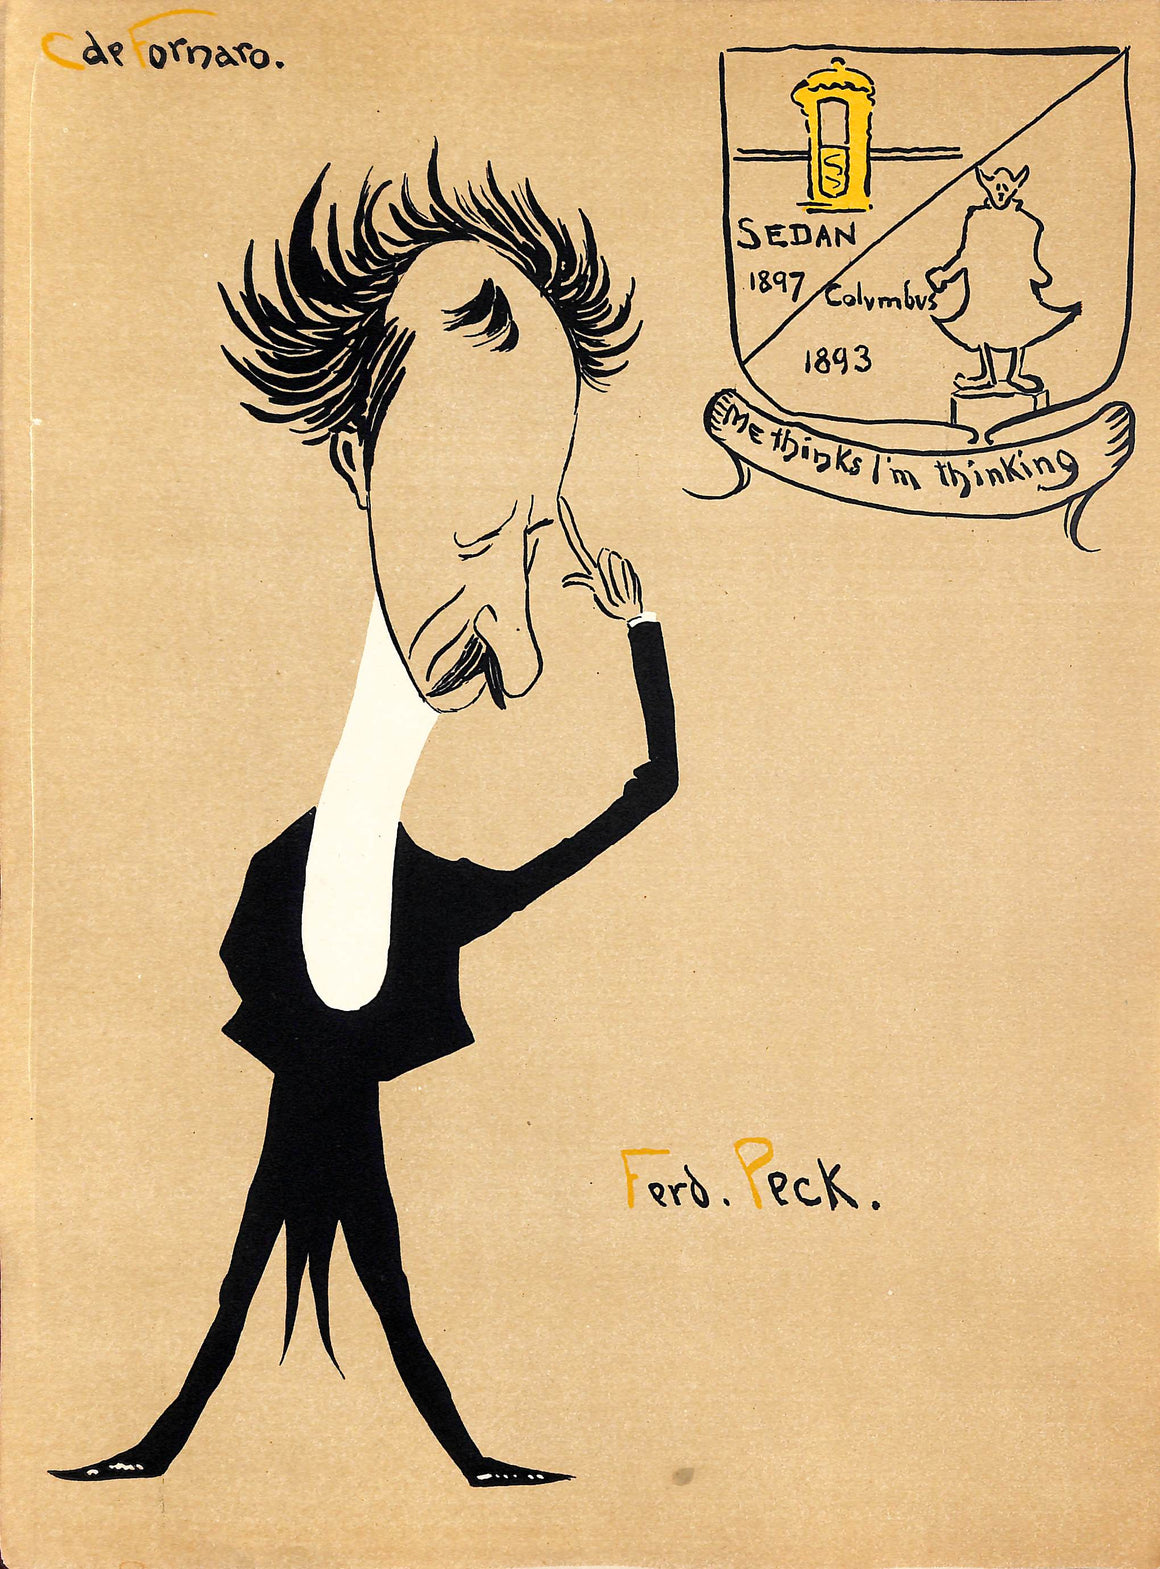 Ferd Peck by Carlo de Fornaro